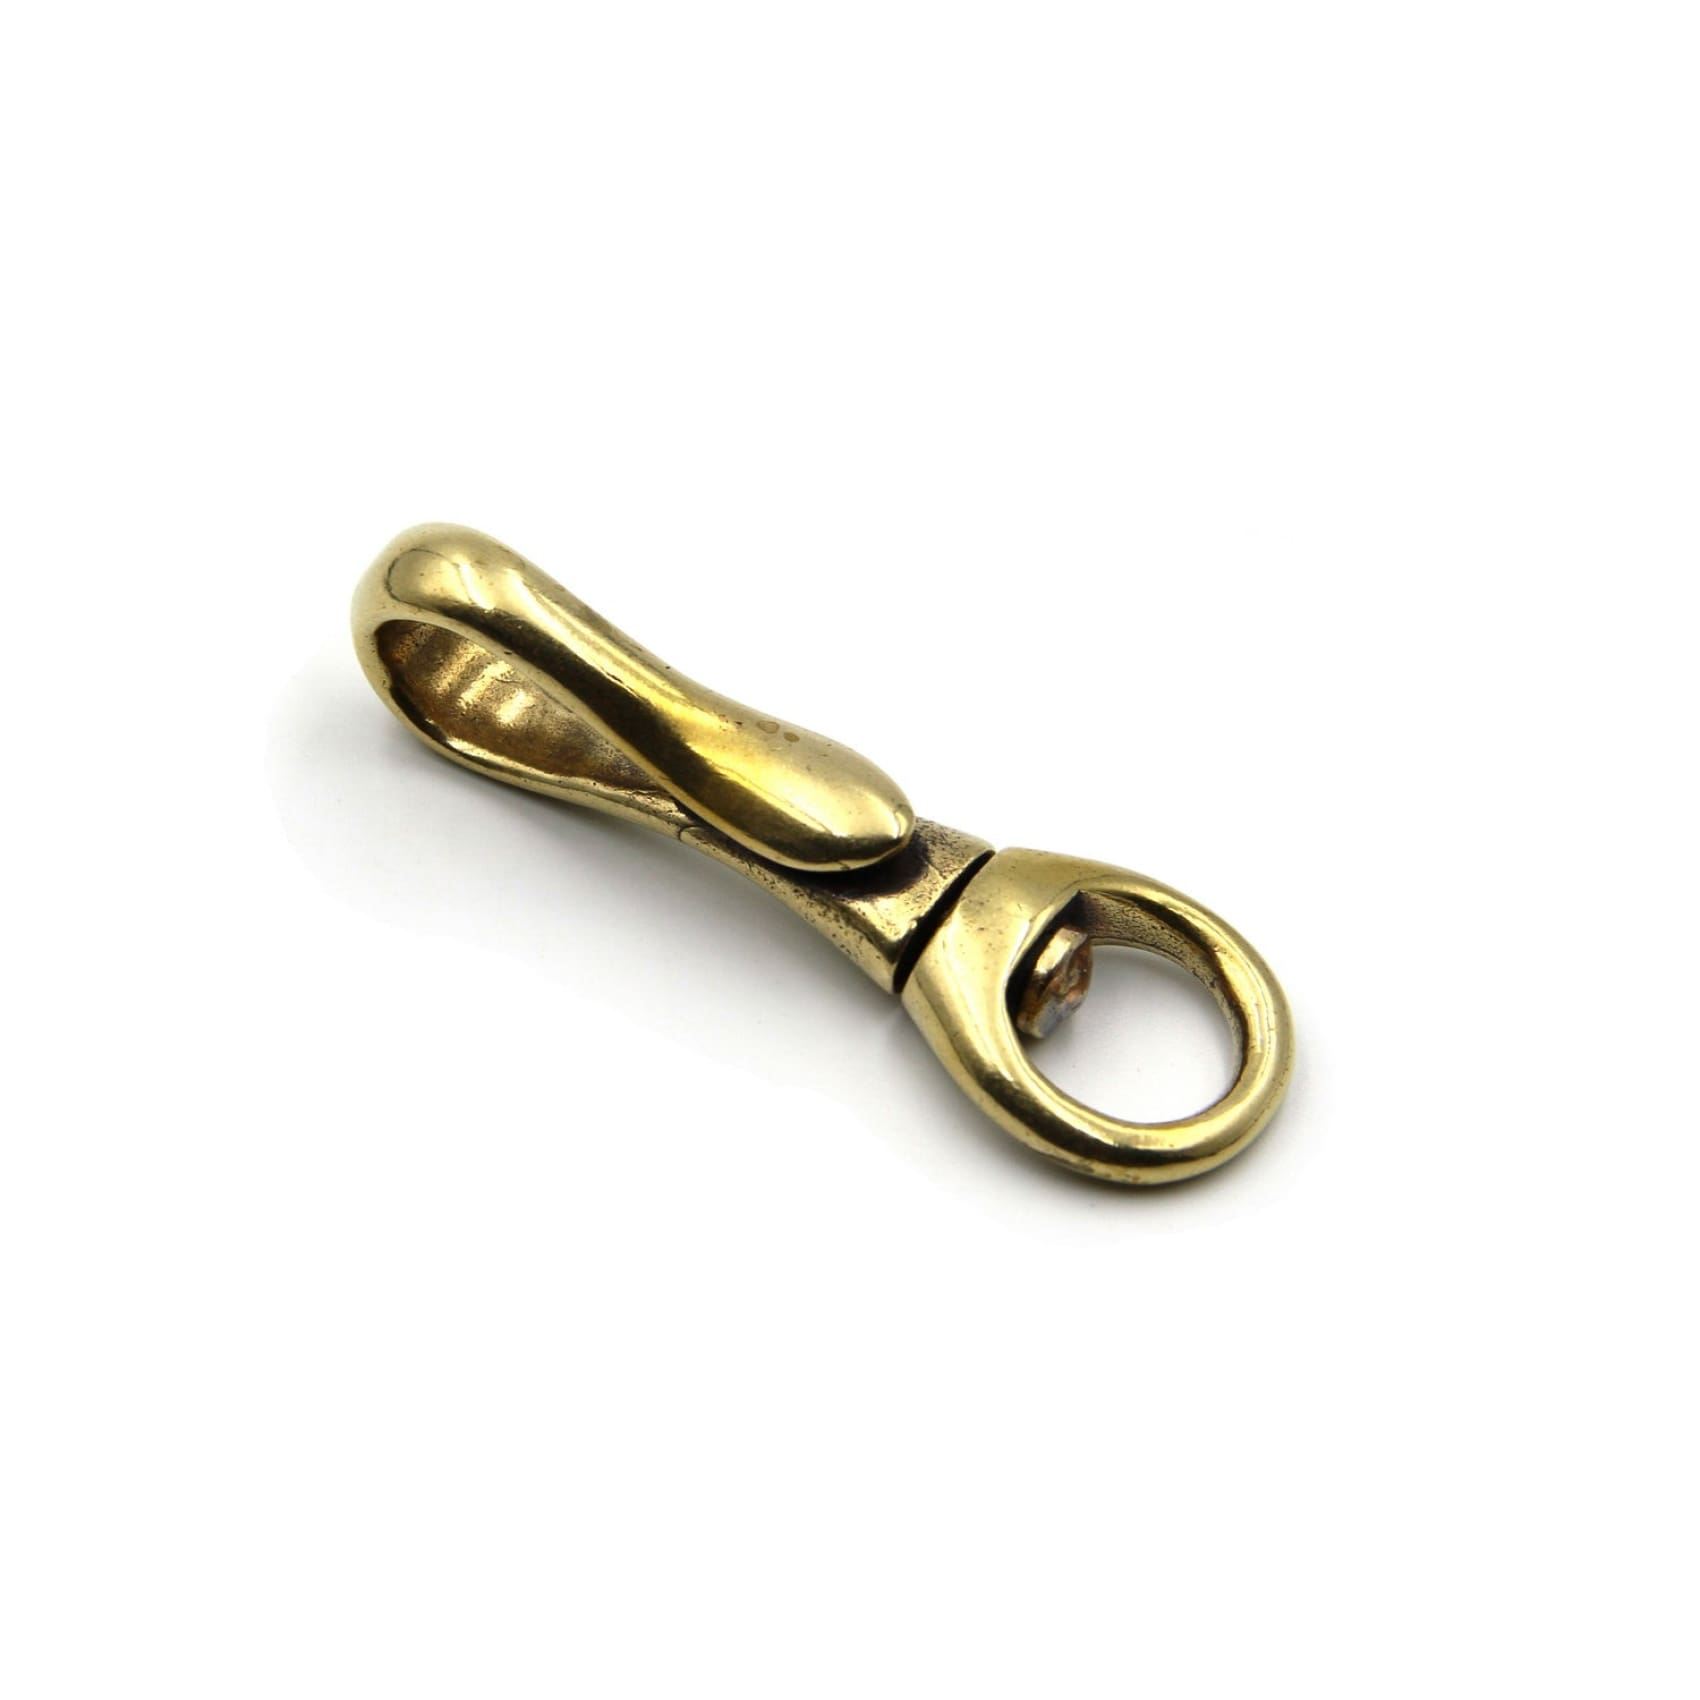 Metal Field Brass Swivel Key Holder Keychain 30pcs